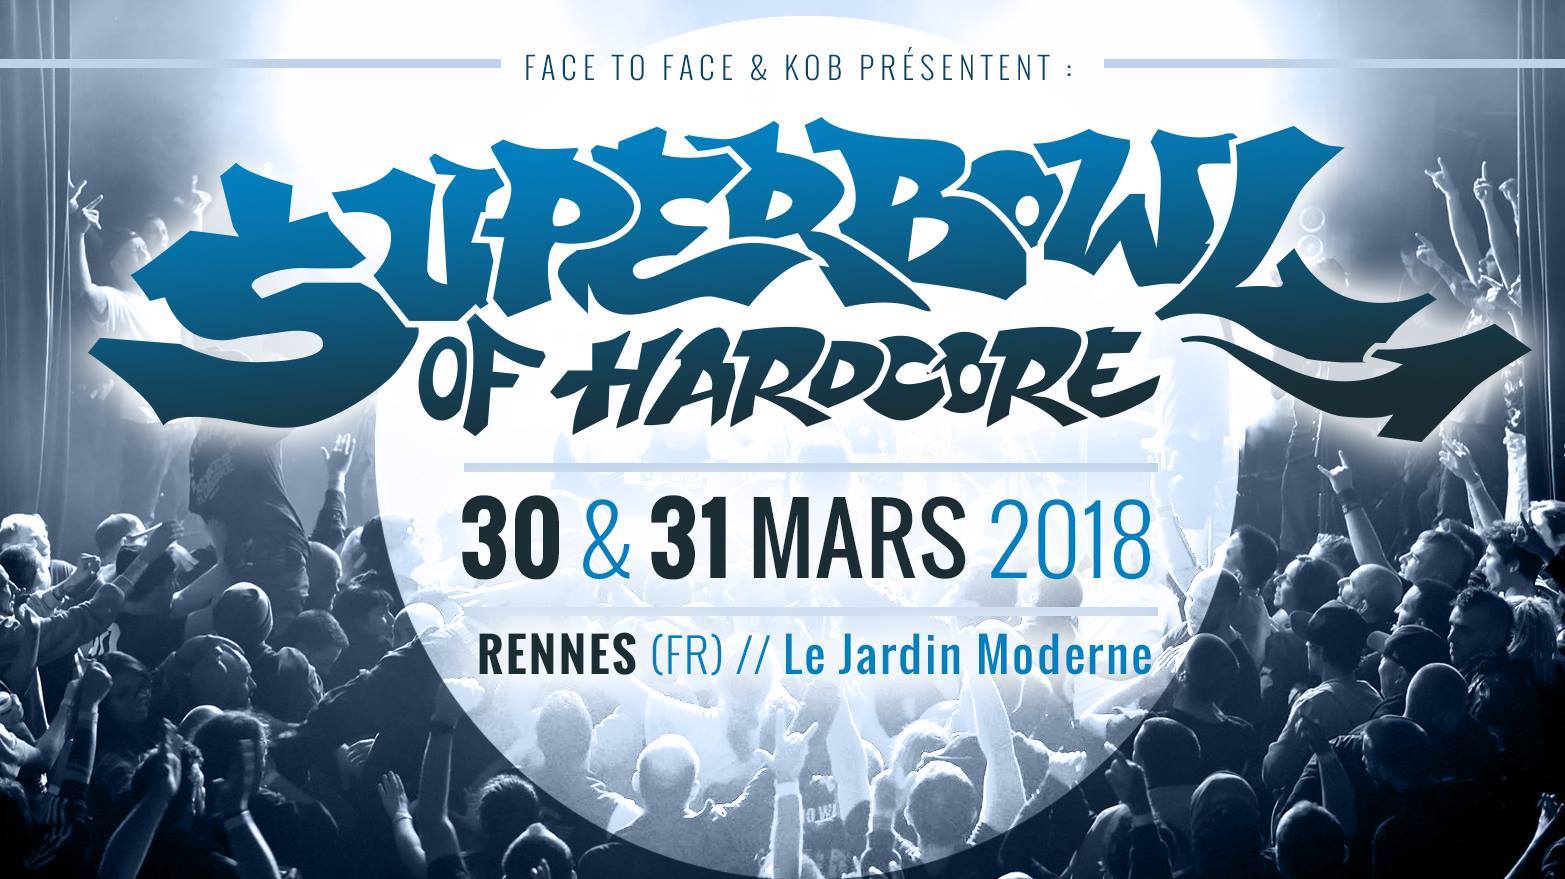 Superbowl of Hardcore Festival